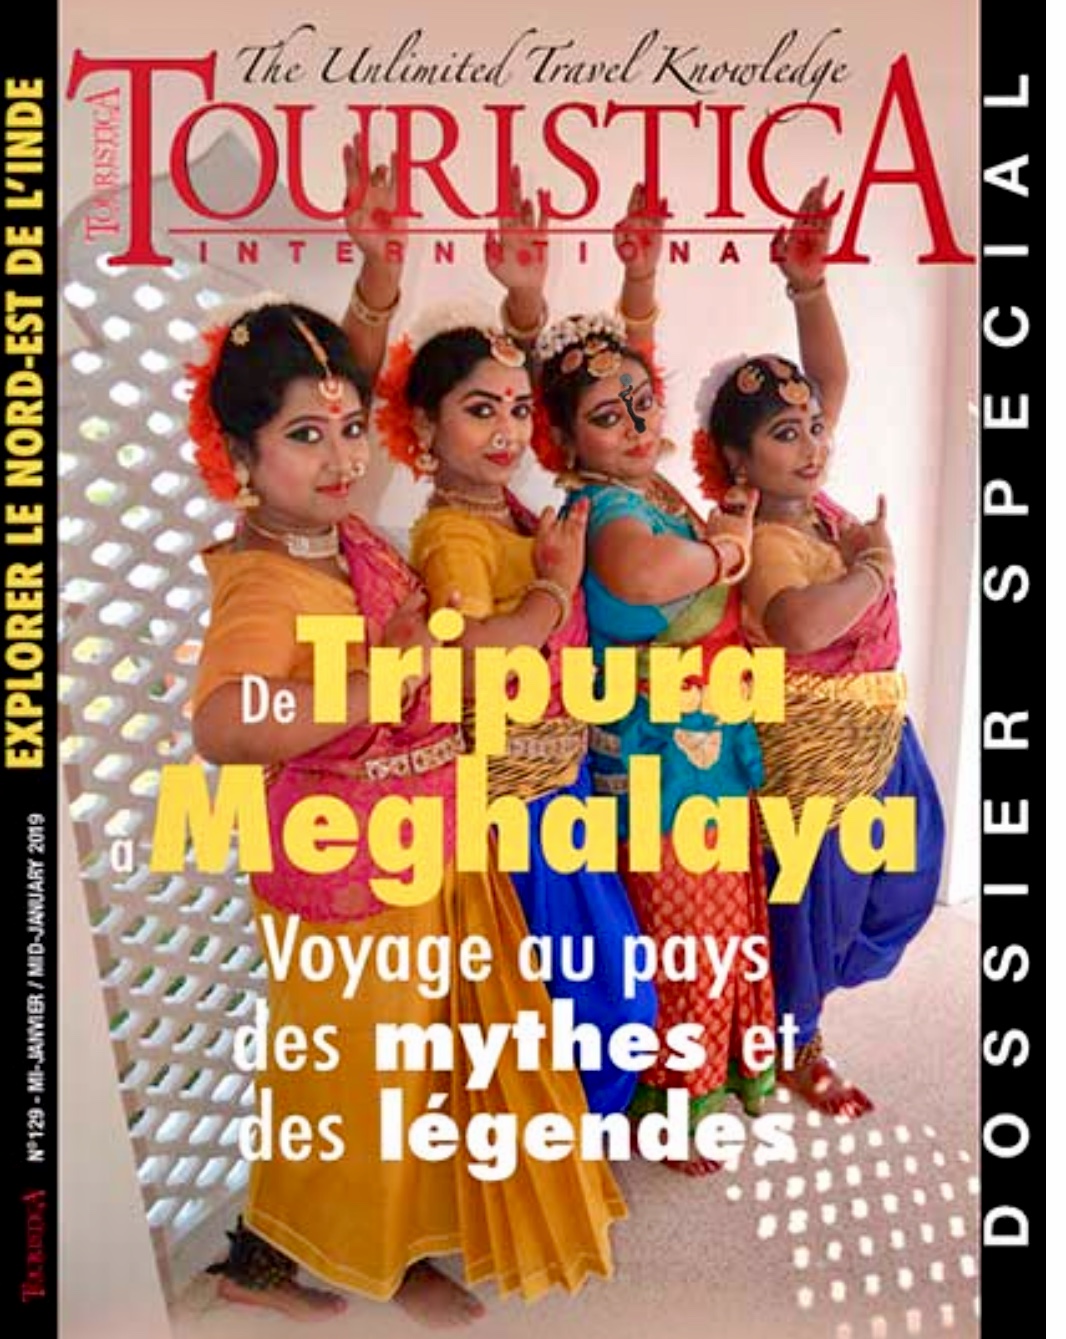 La couverture du magazine touristica international mettant en vedette un groupe de danseurs du Nord-Est de l'Inde.